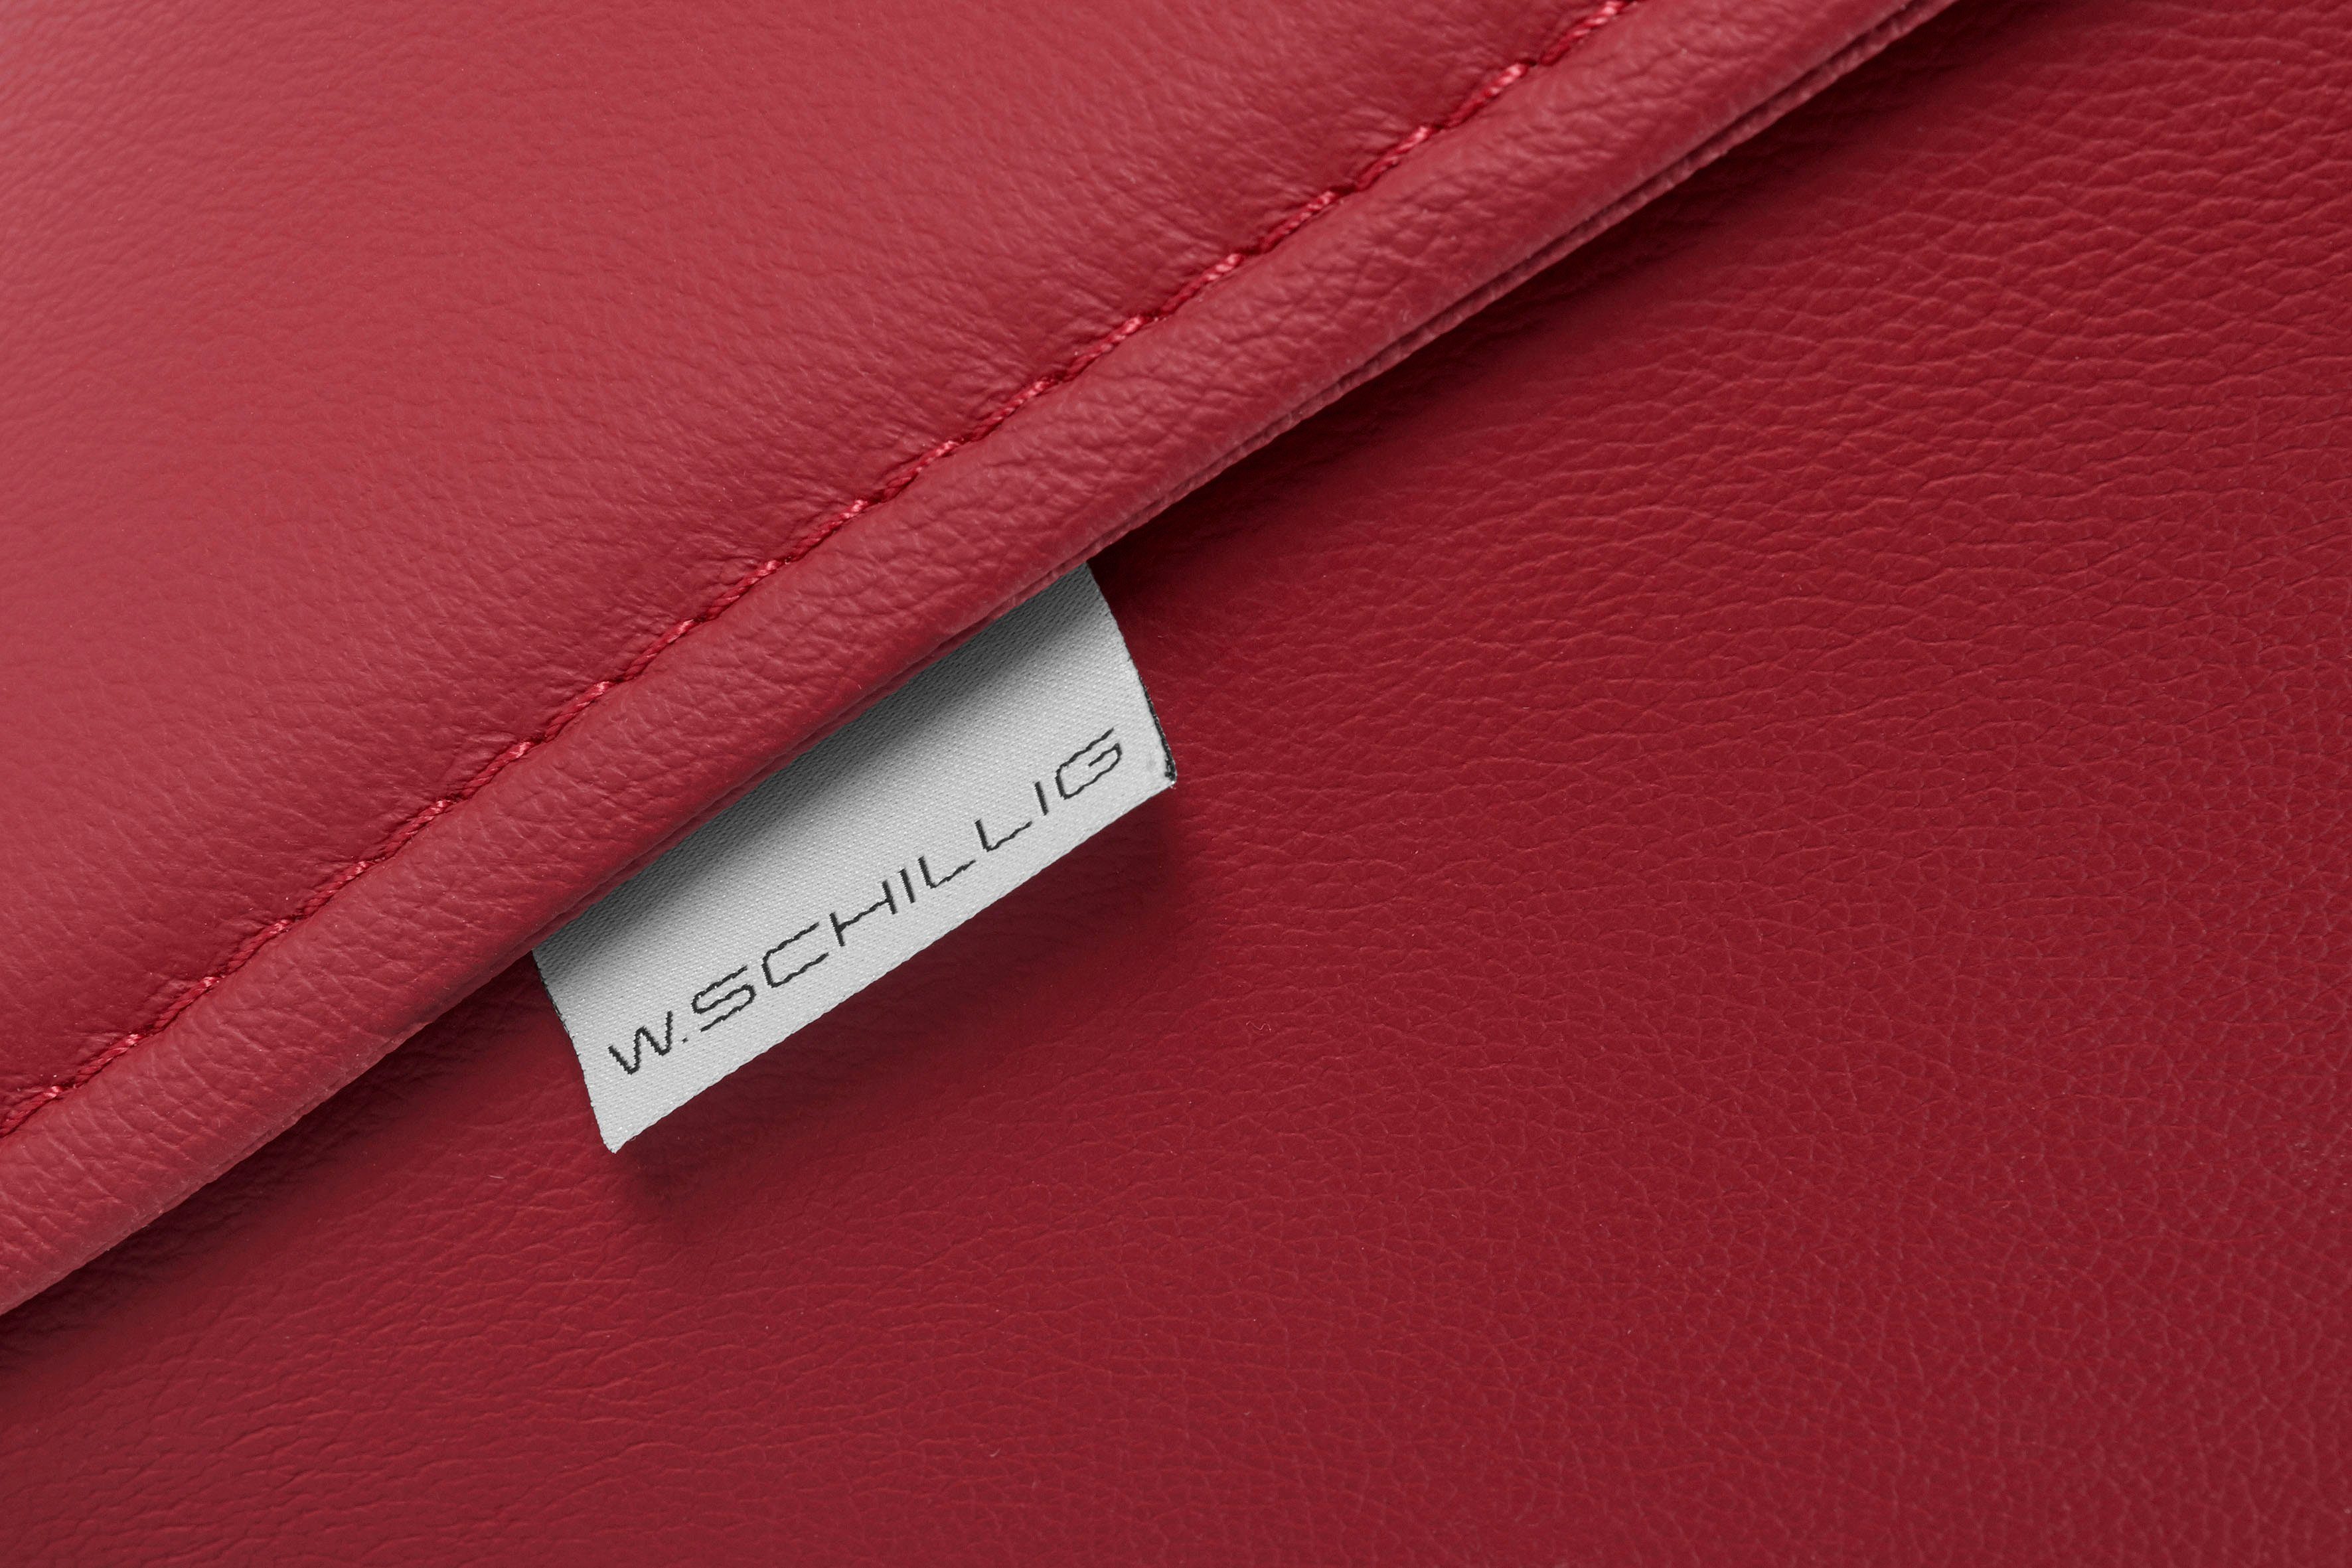 W.SCHILLIG cm mit in pulverbeschichtet, 224 Breite 3-Sitzer red sally, Metall-Winkelfüßen Z59 ruby Schwarz